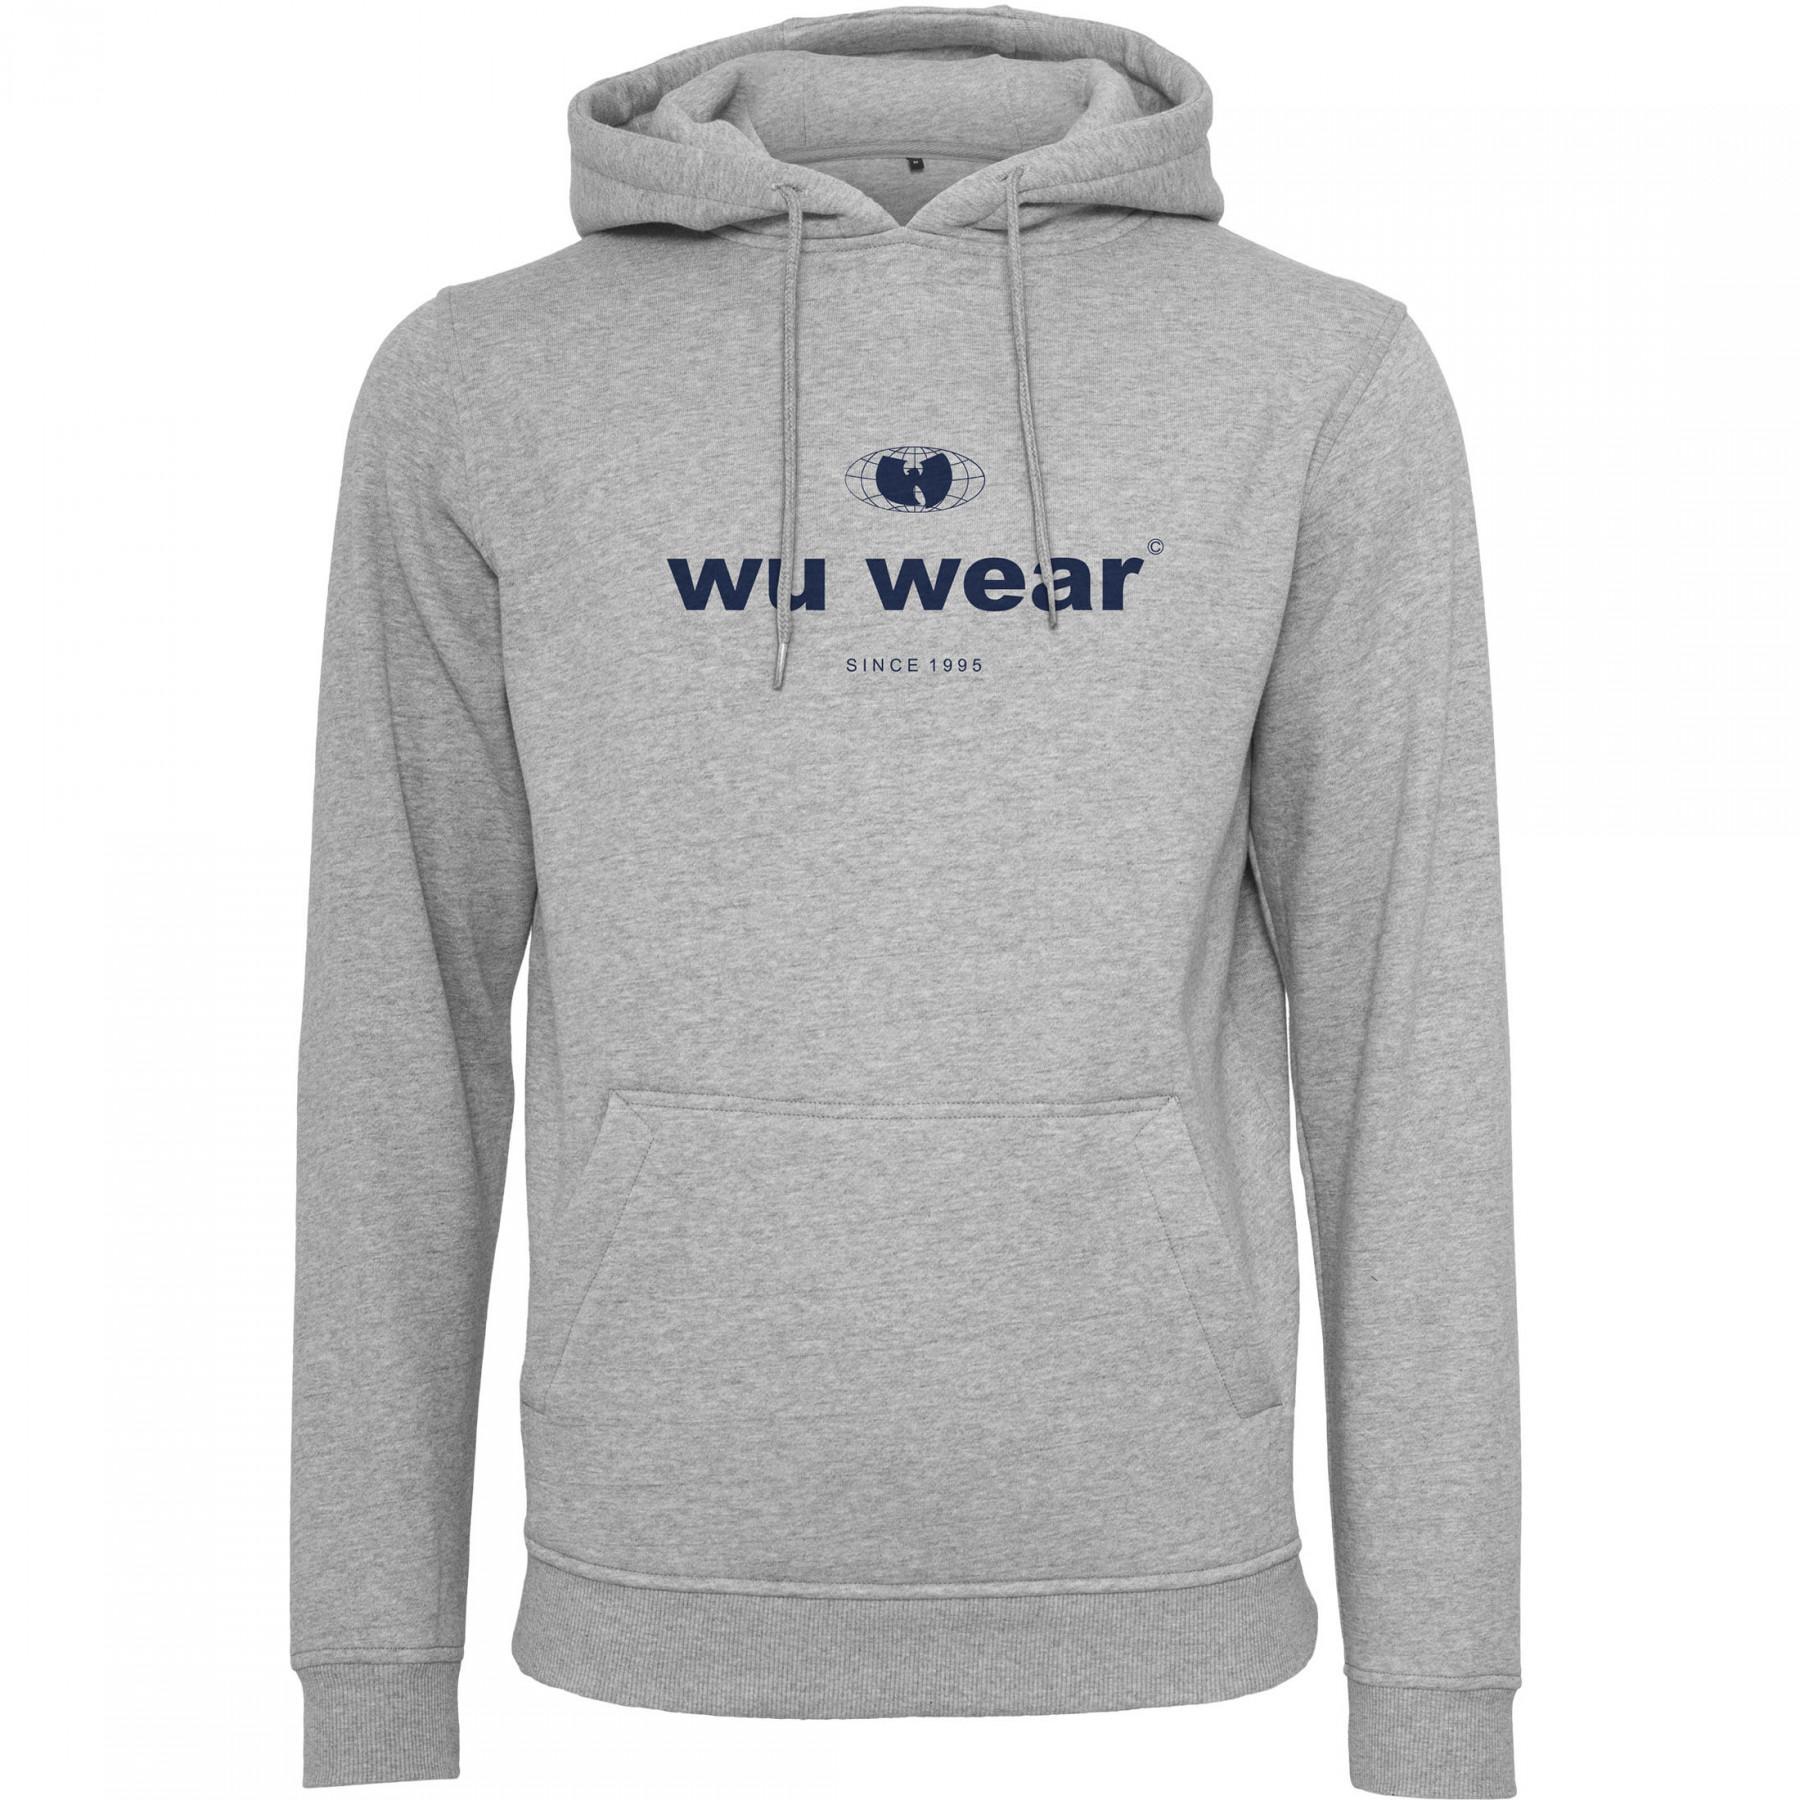 Sweatshirt Wu-wear since 1995 2.0